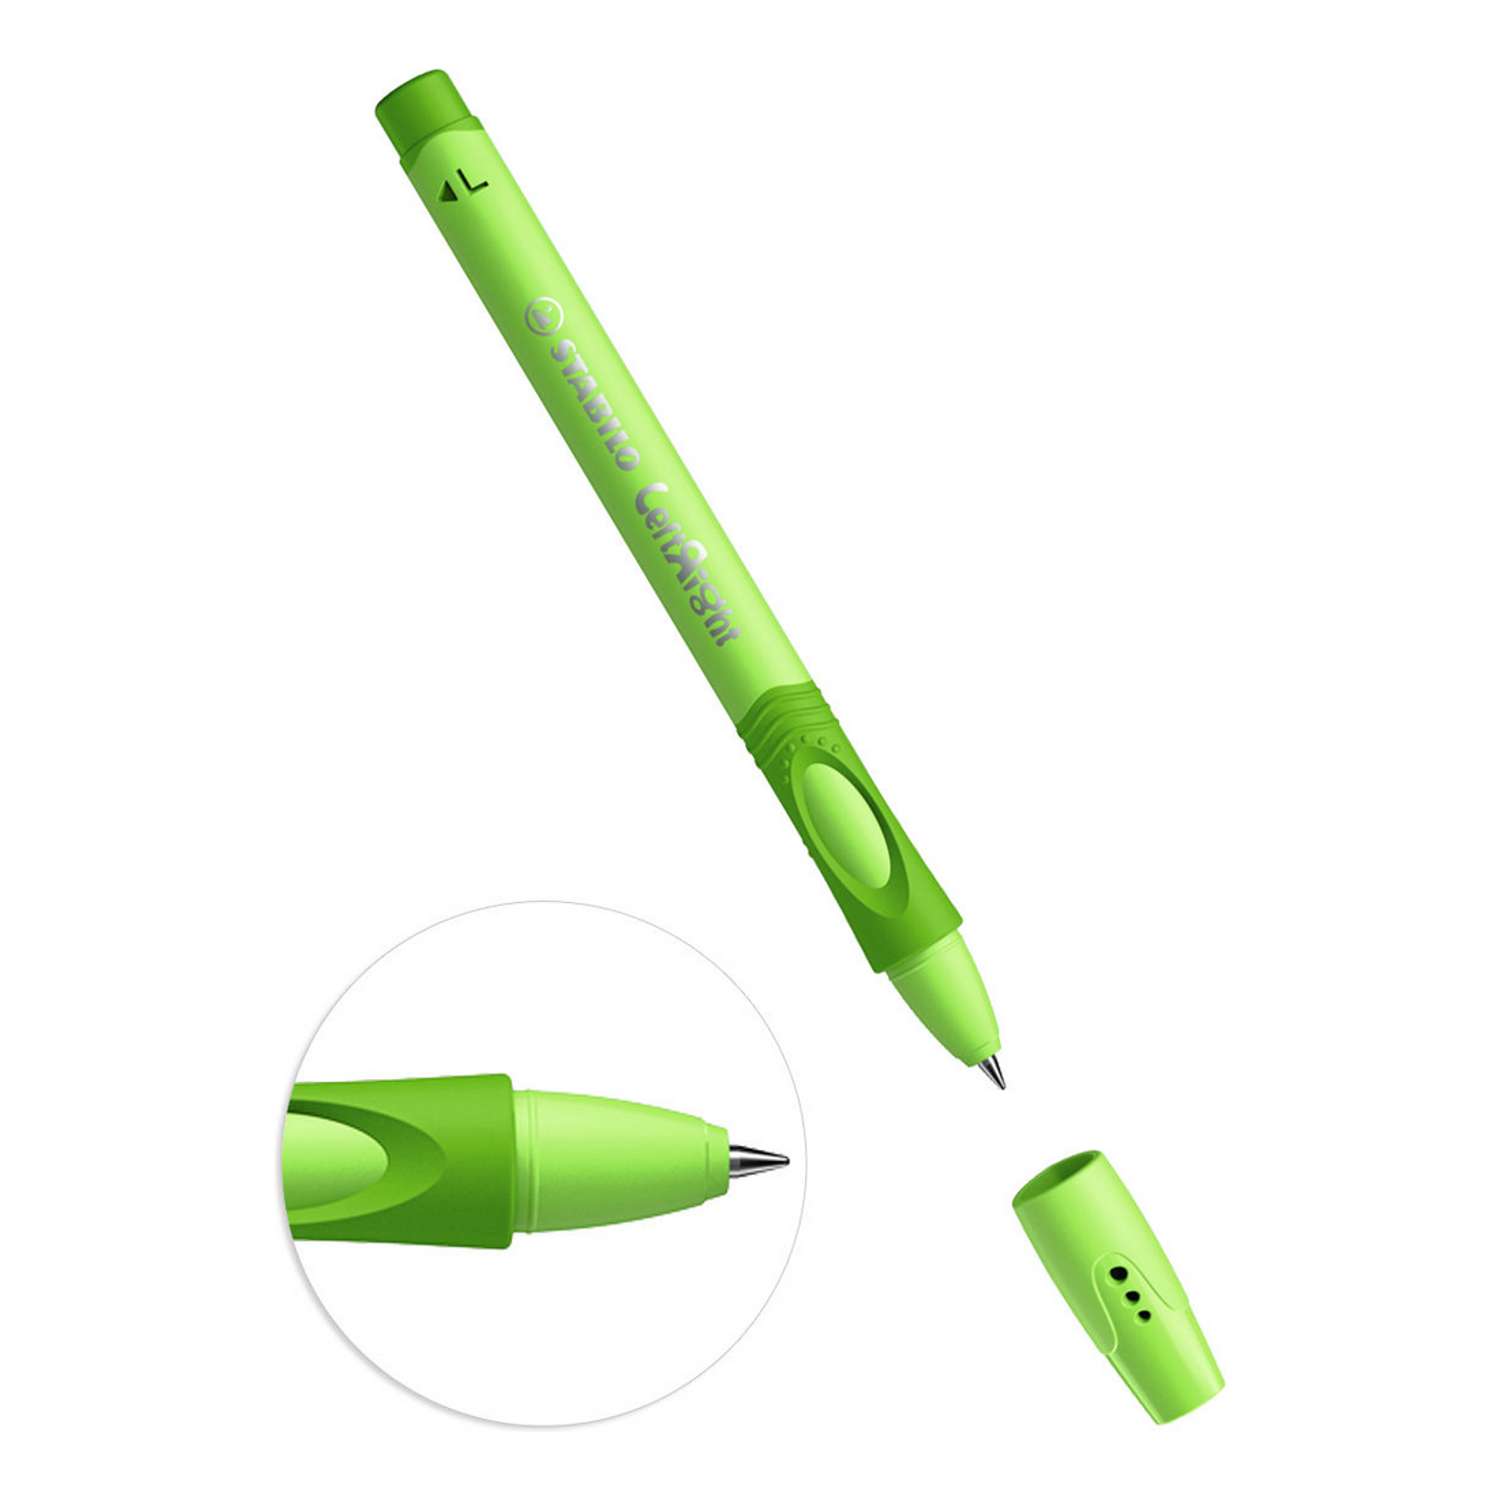 Ручка шариковая STABILO LeftRight для левшей для обучения письму F масляная синяя / корпус зеленый 6318/2-1B - фото 2